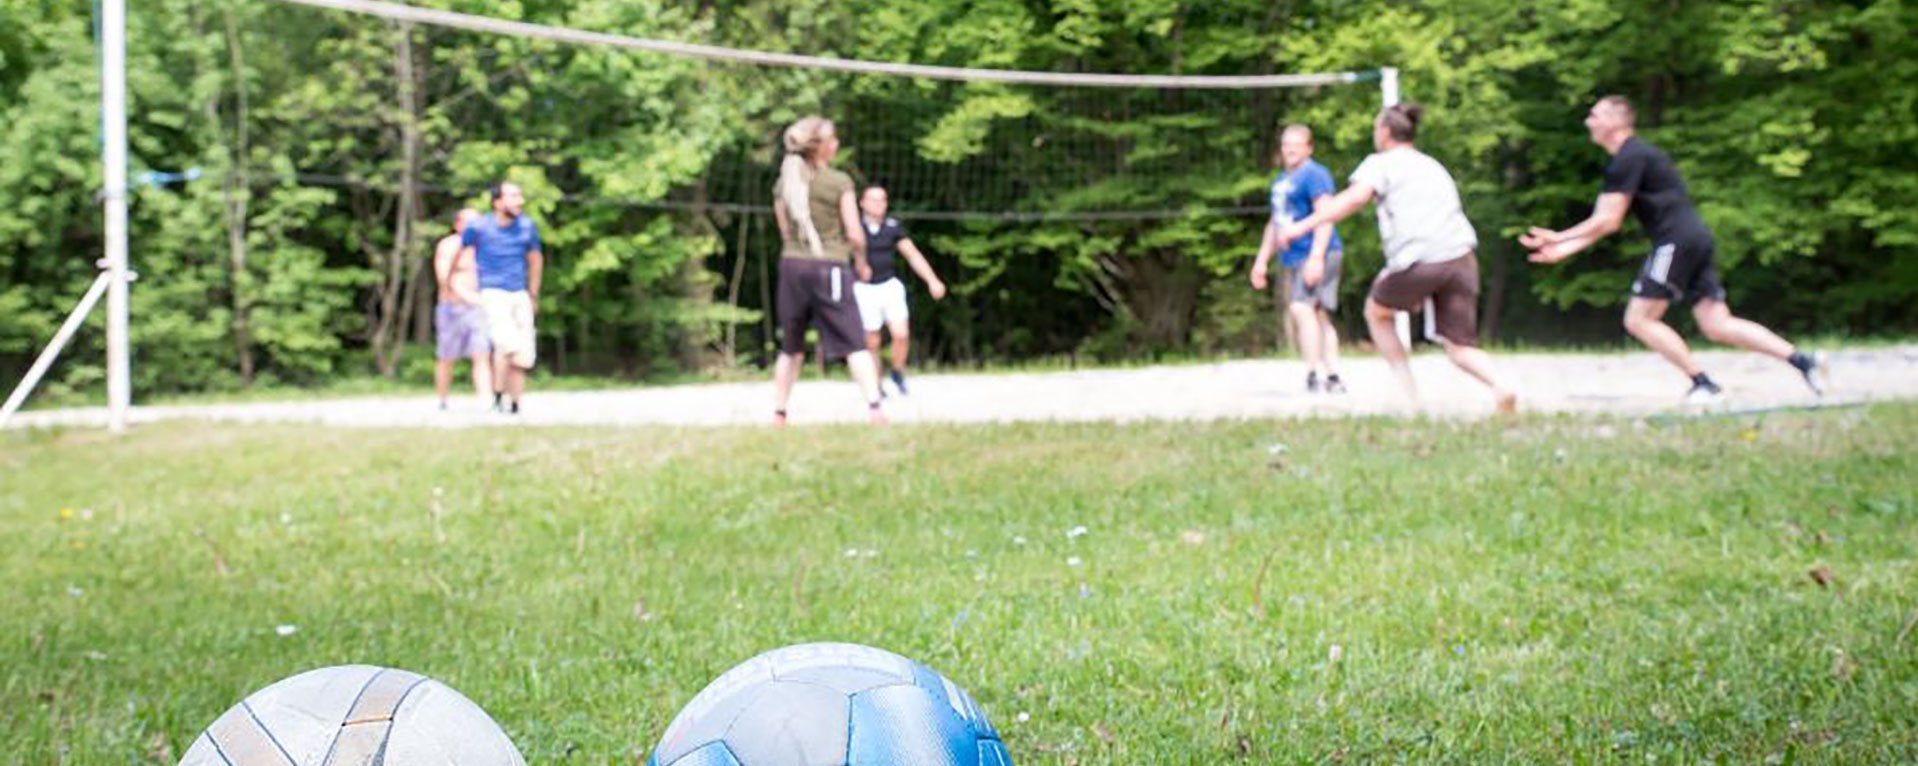 Nahaufnahme: zwei Volleybälle im Vordergrund - dahinter spielen eine Gruppe Männer am Netz